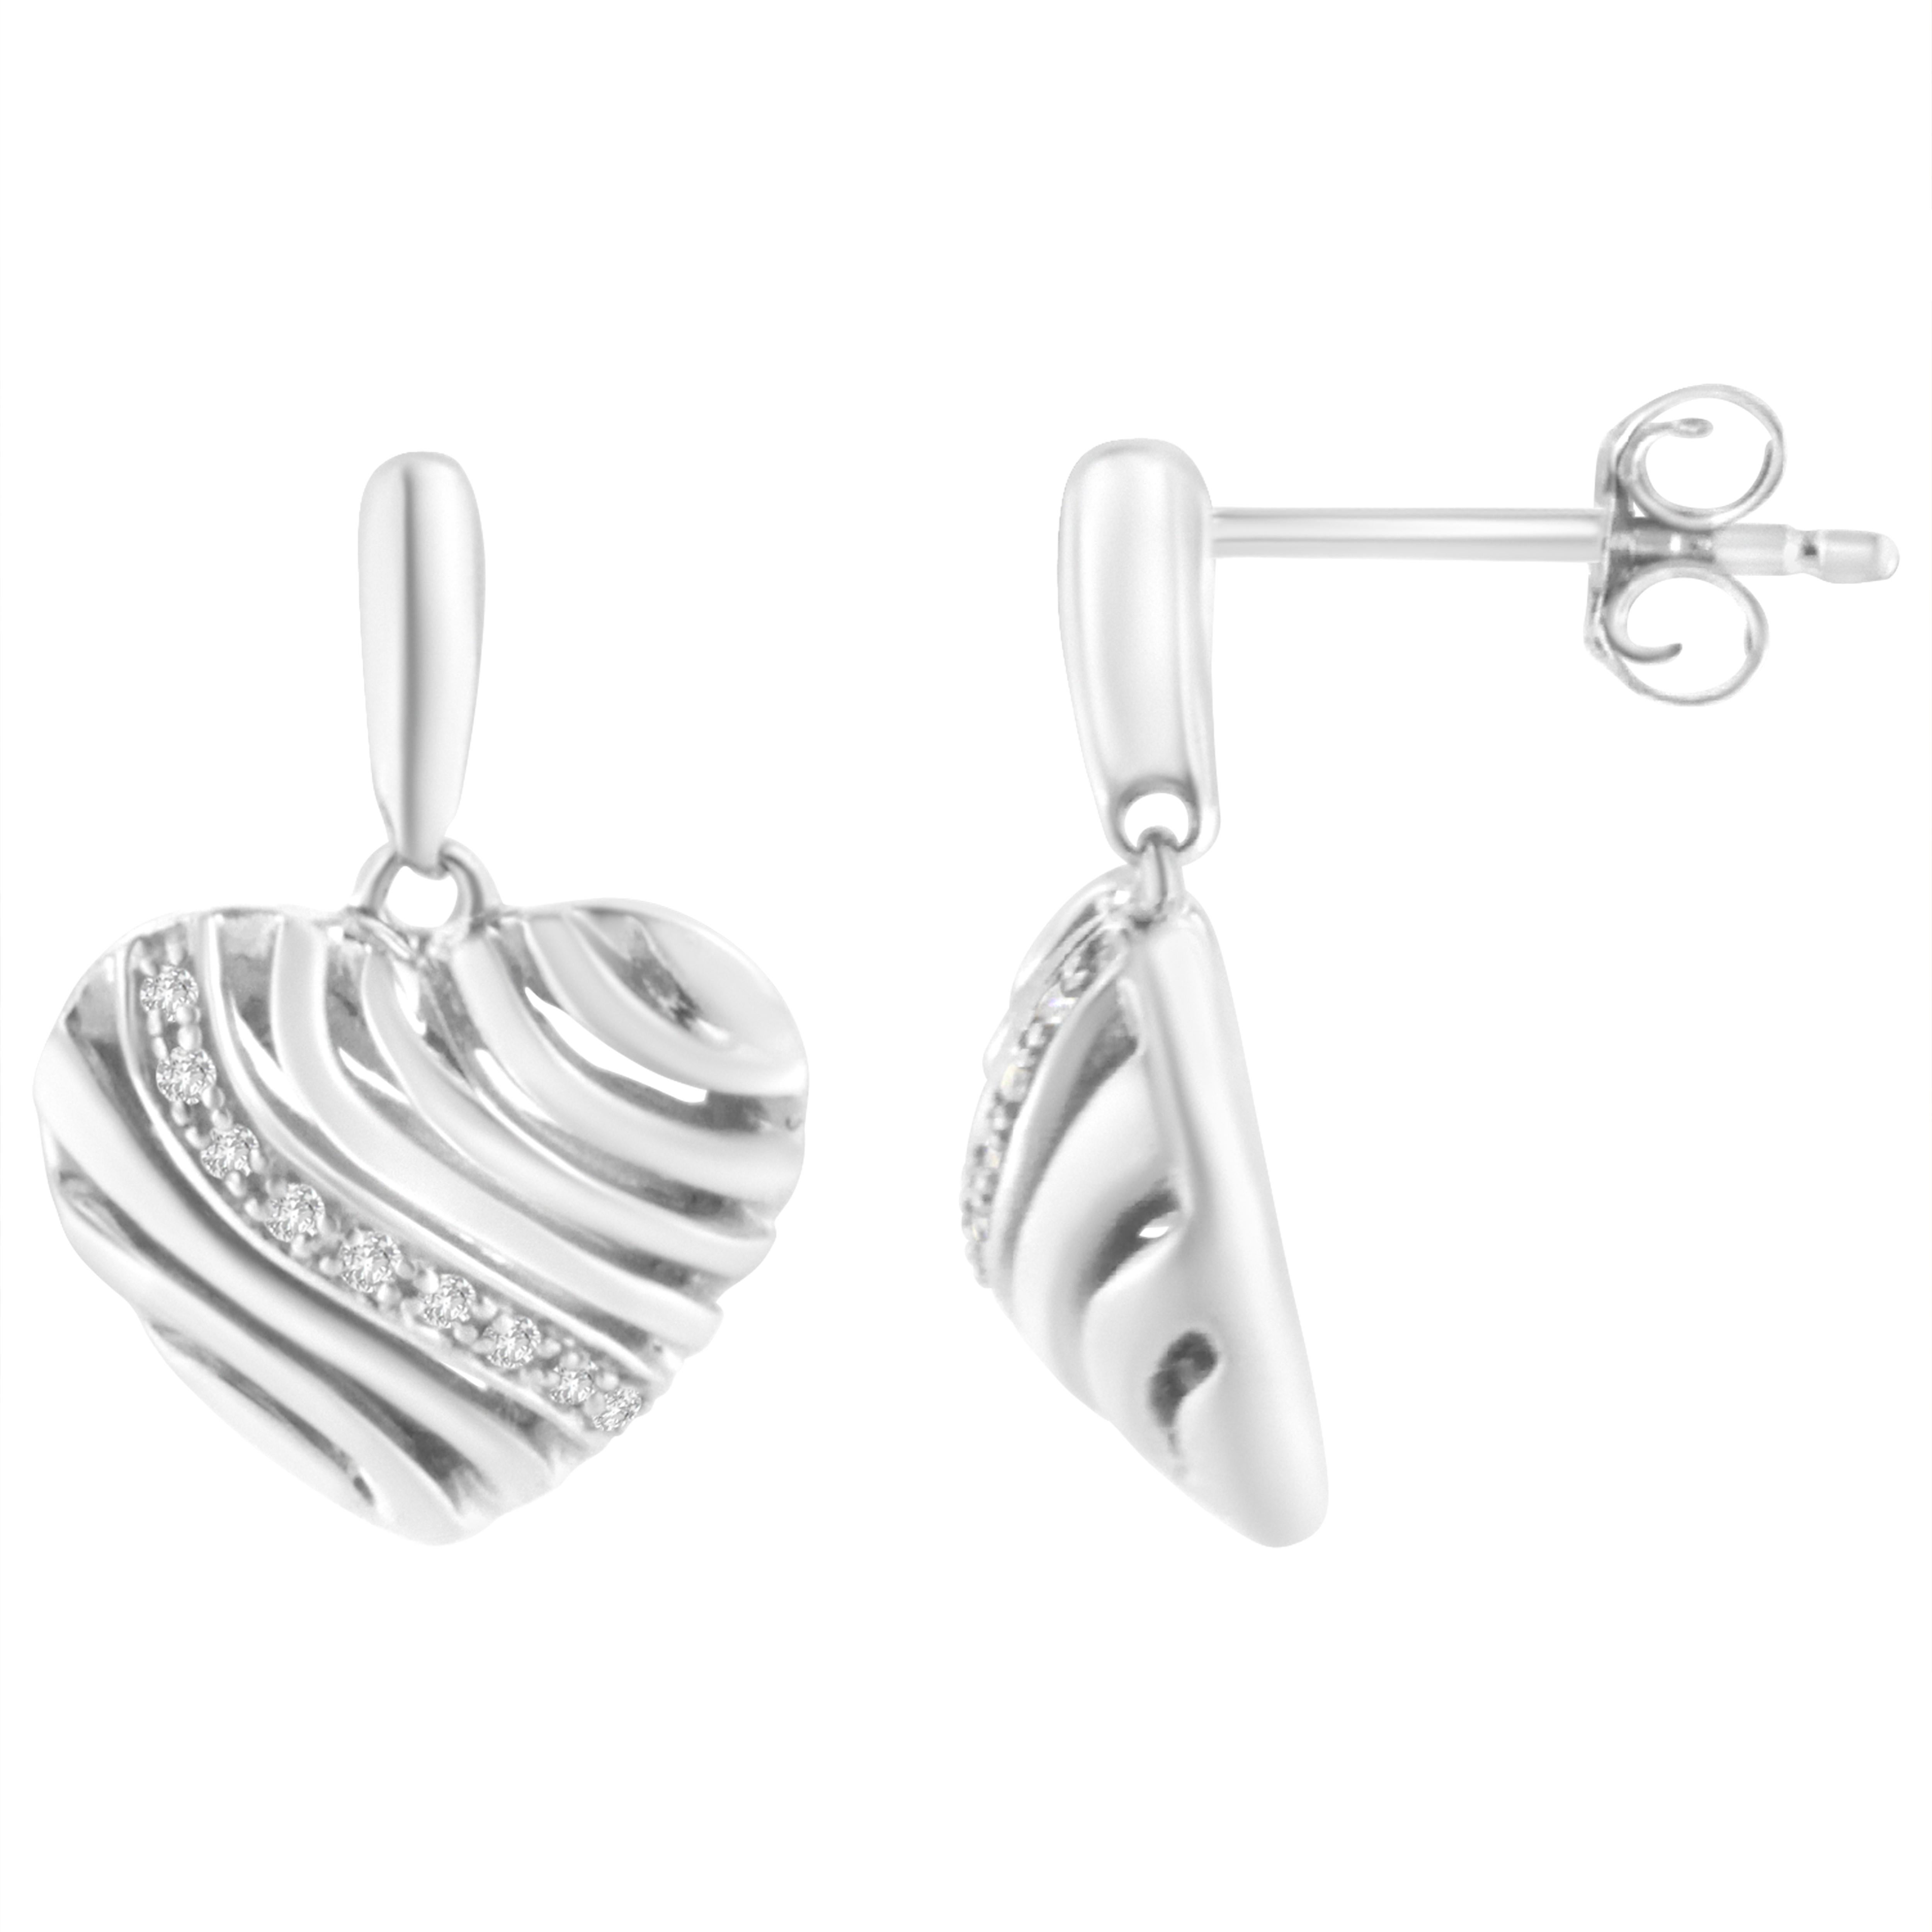 Stehlen Sie ihr Herz mit diesen schicken Diamant-Puff-Ohrringen. Diese herzförmigen Ohrringe sind aus glänzendem Sterlingsilber gefertigt und bestechen durch 18 funkelnde Diamanten im Pavee-Schliff, die sich in die sanften Kurven des Sterlingsilbers